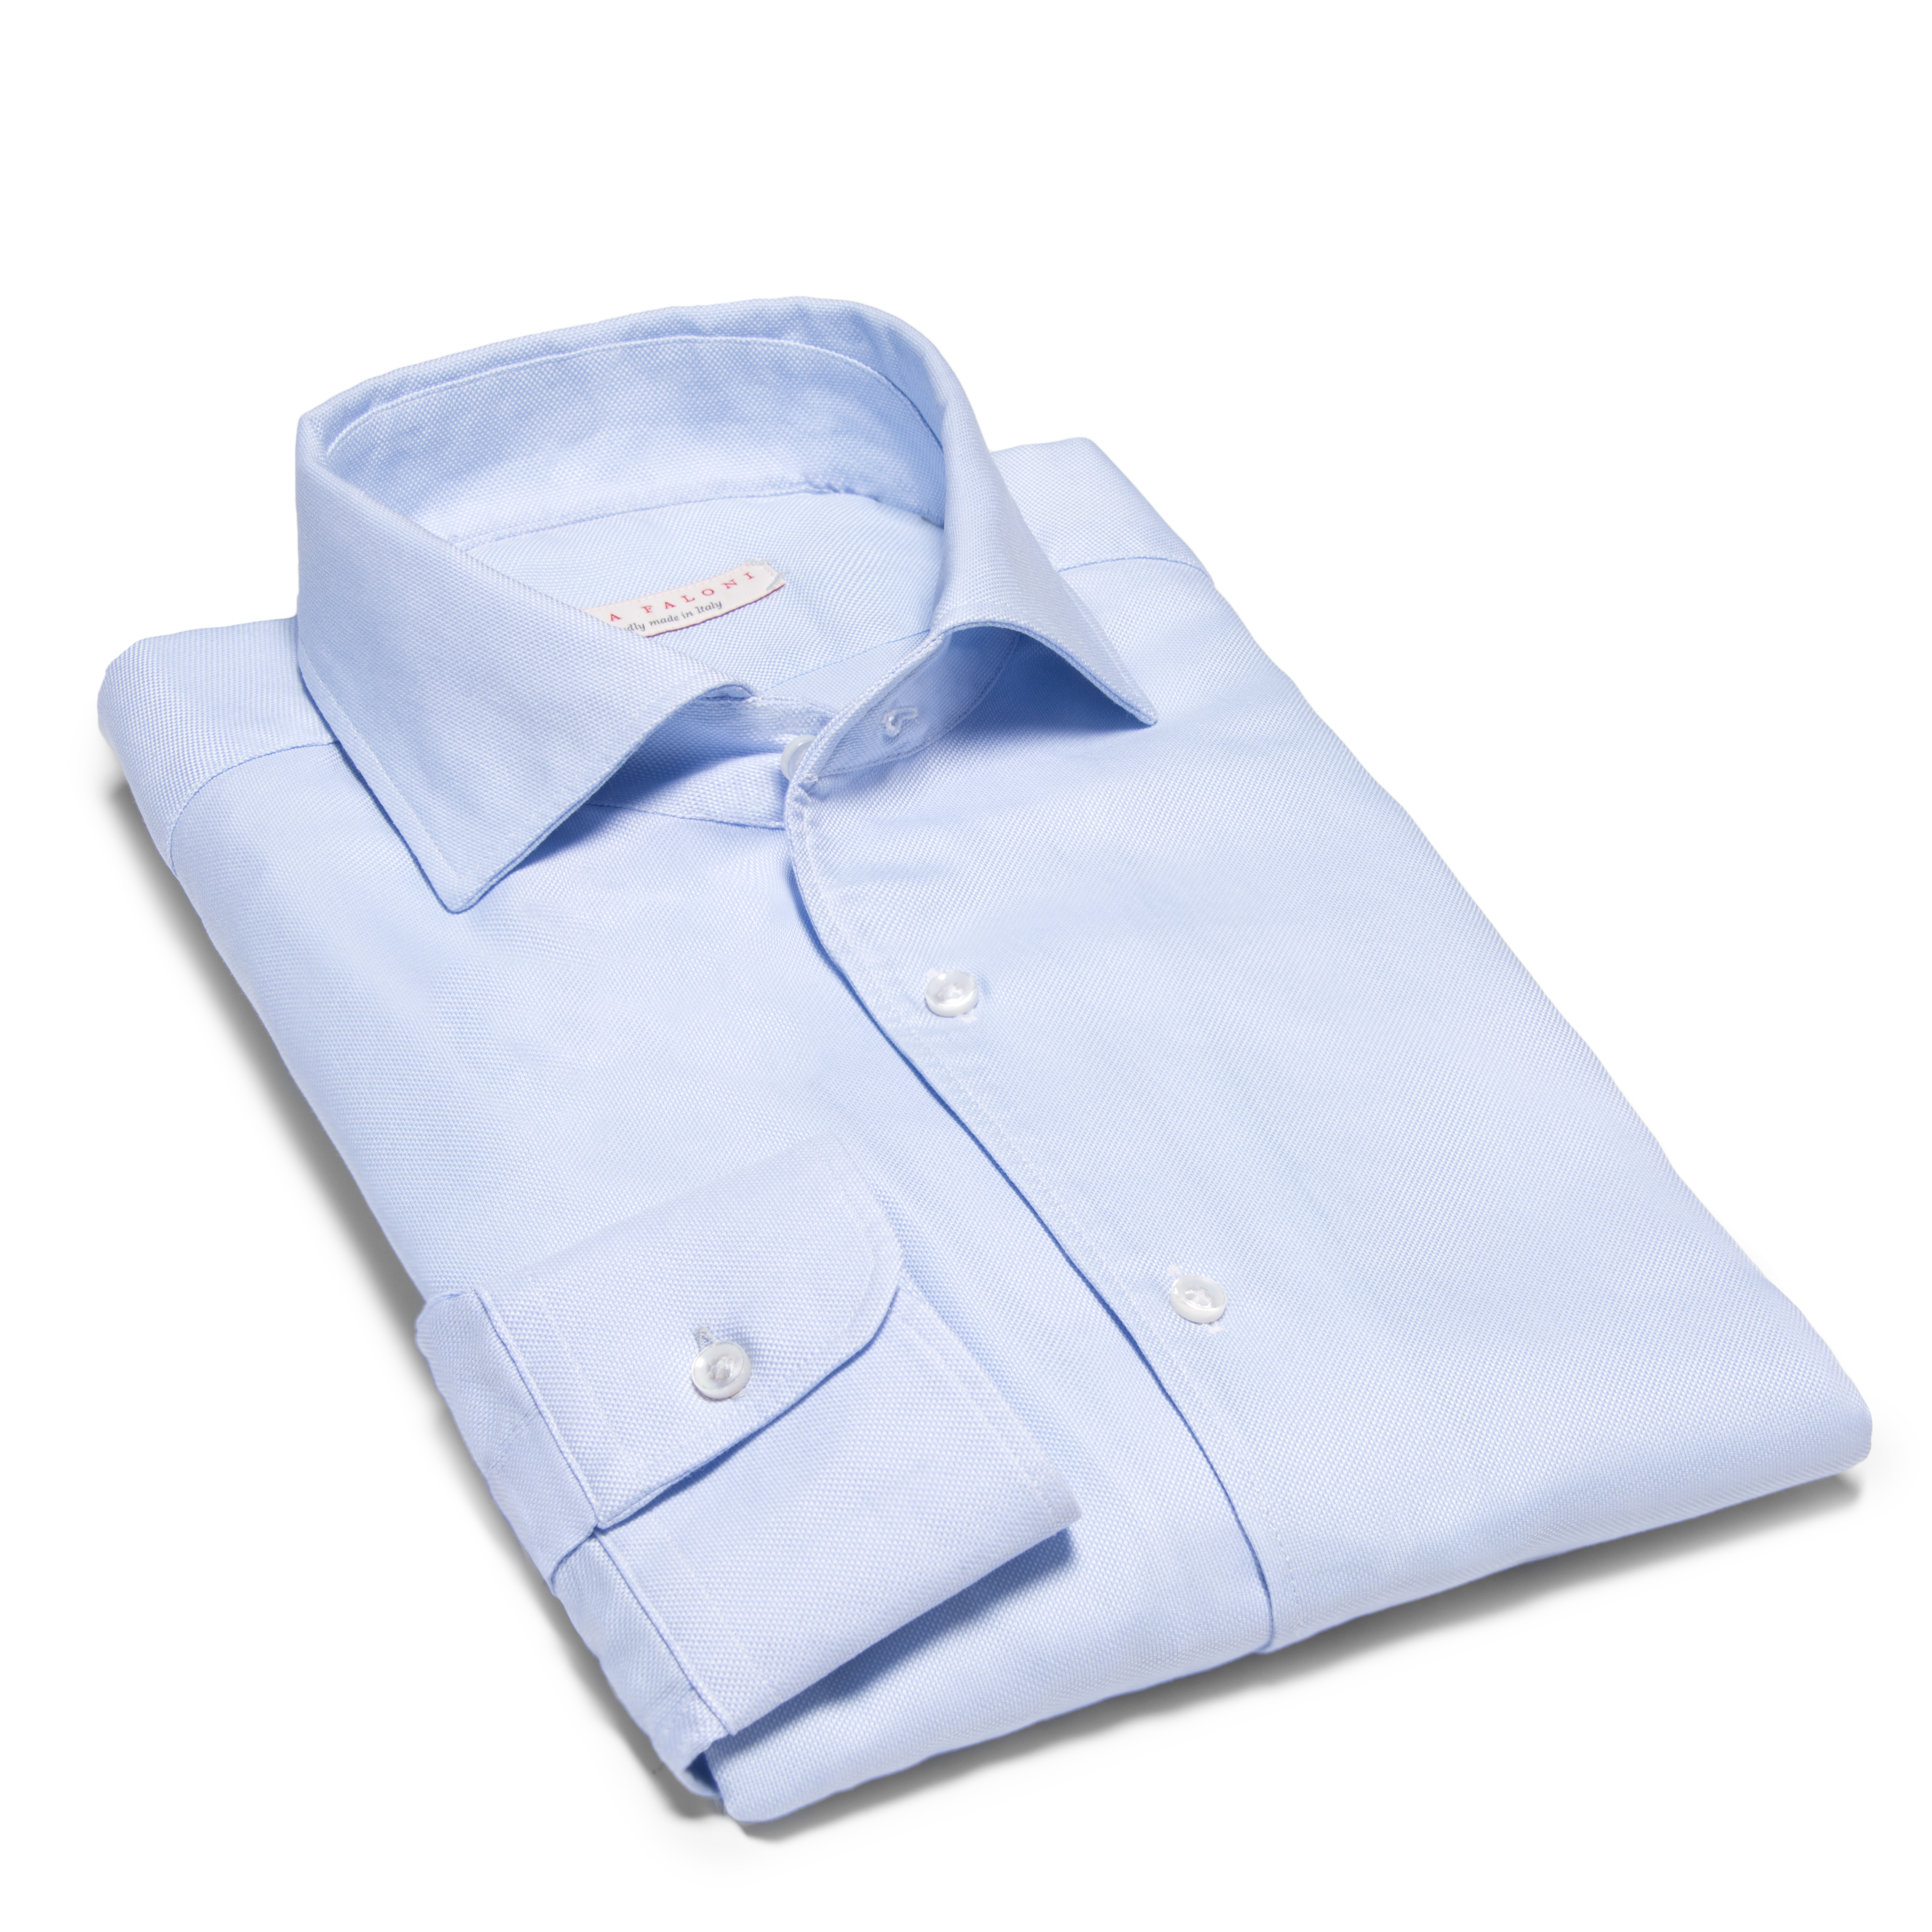 Luca Faloni's light blue brushed cotton shirt